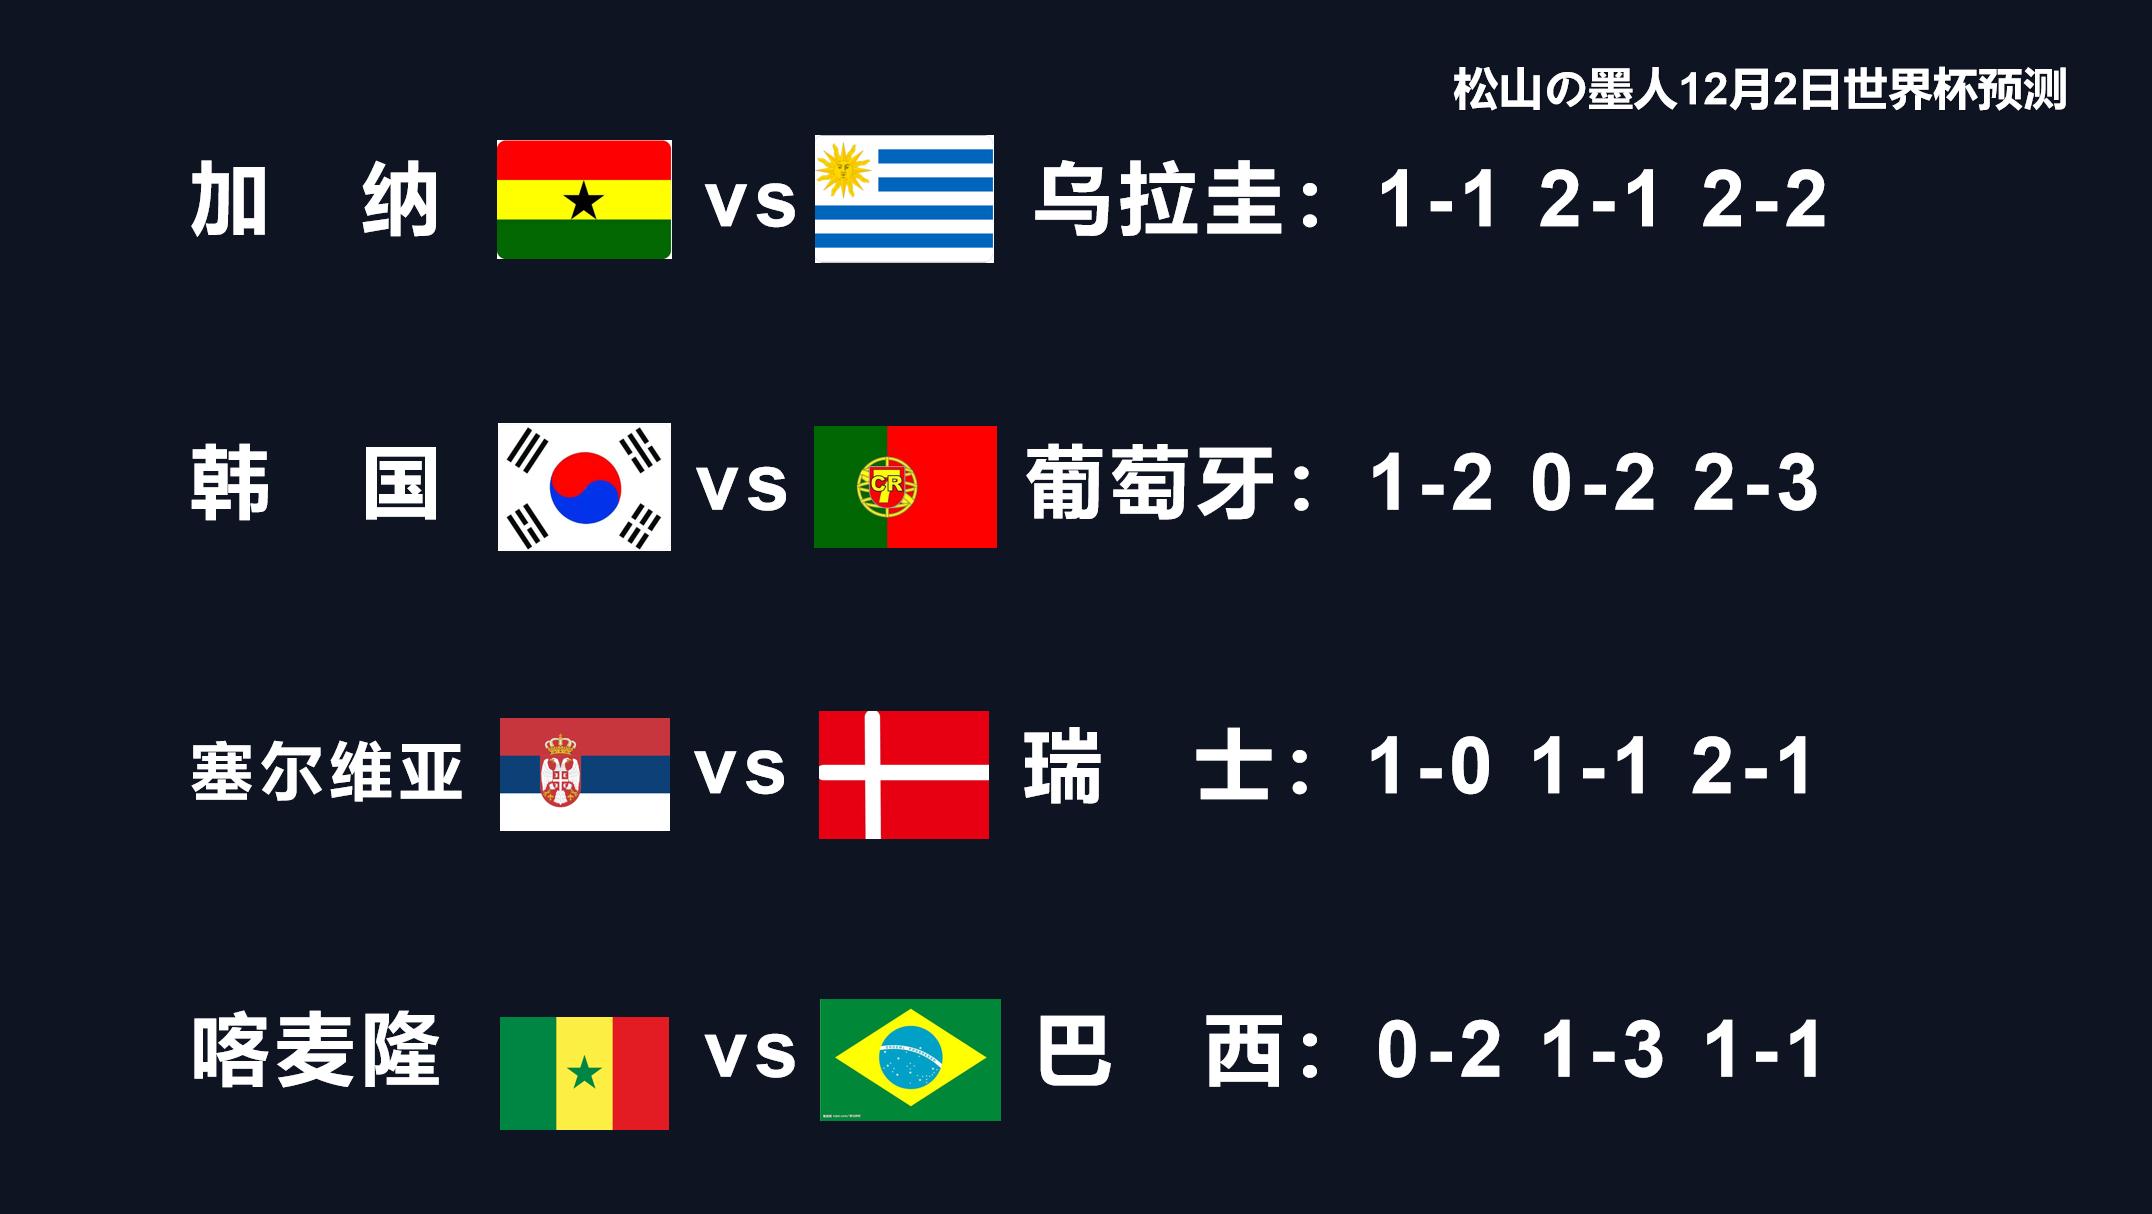 2日世界杯预测（塞尔维亚vs瑞士 喀麦隆vs巴西）比分预测在最后